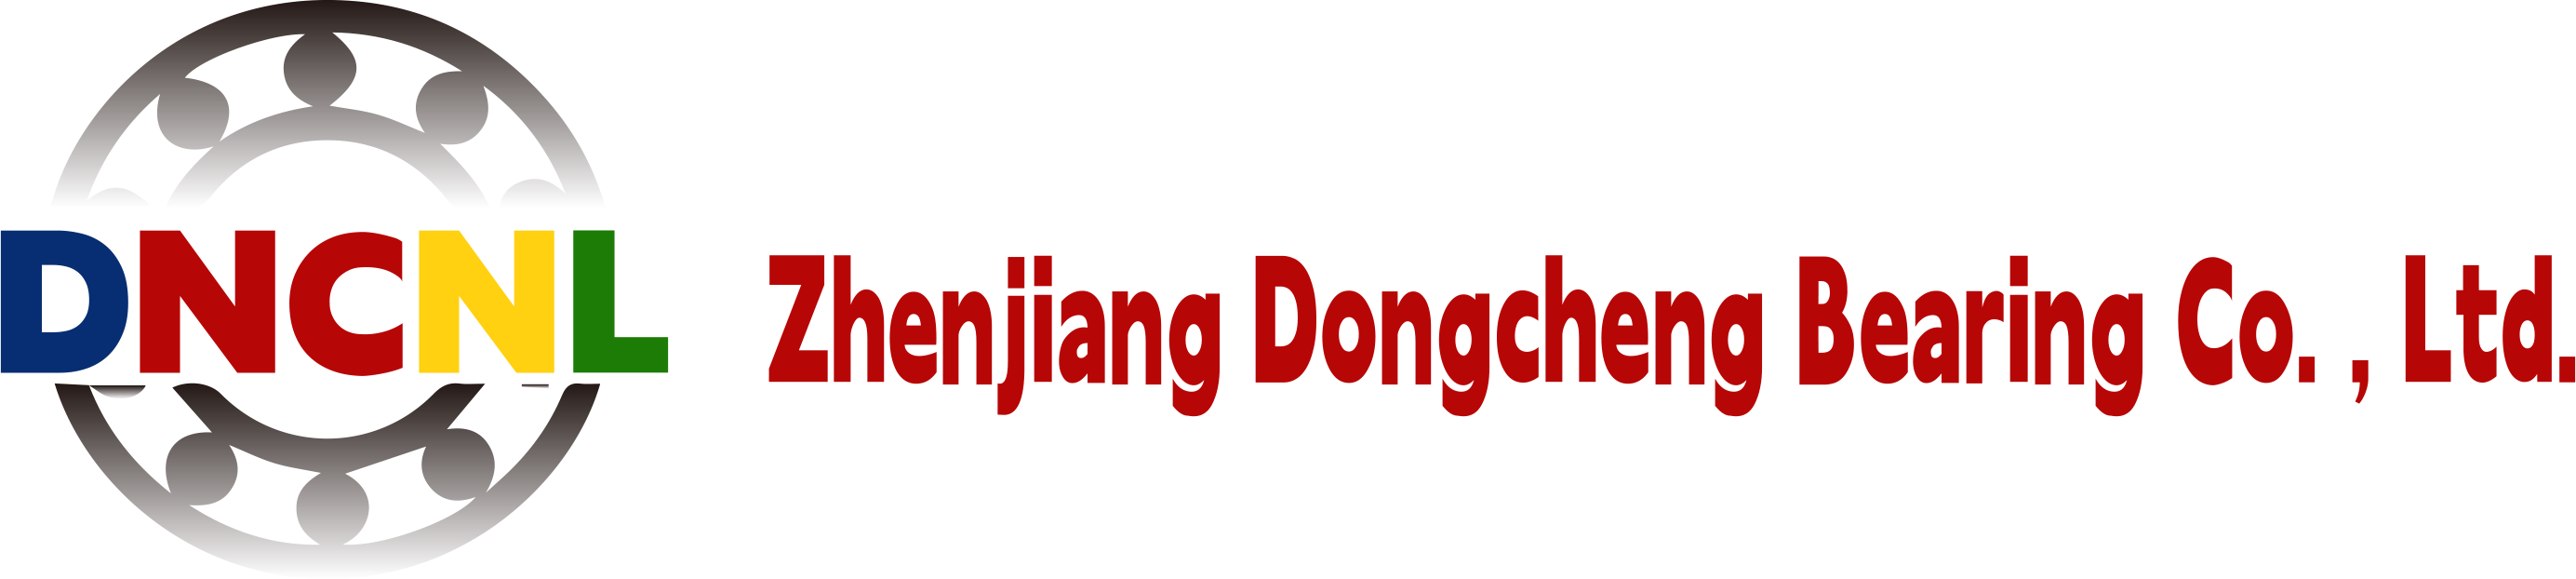 تشنجيانغ دونغتشنغ وإذ تضع المحدودة